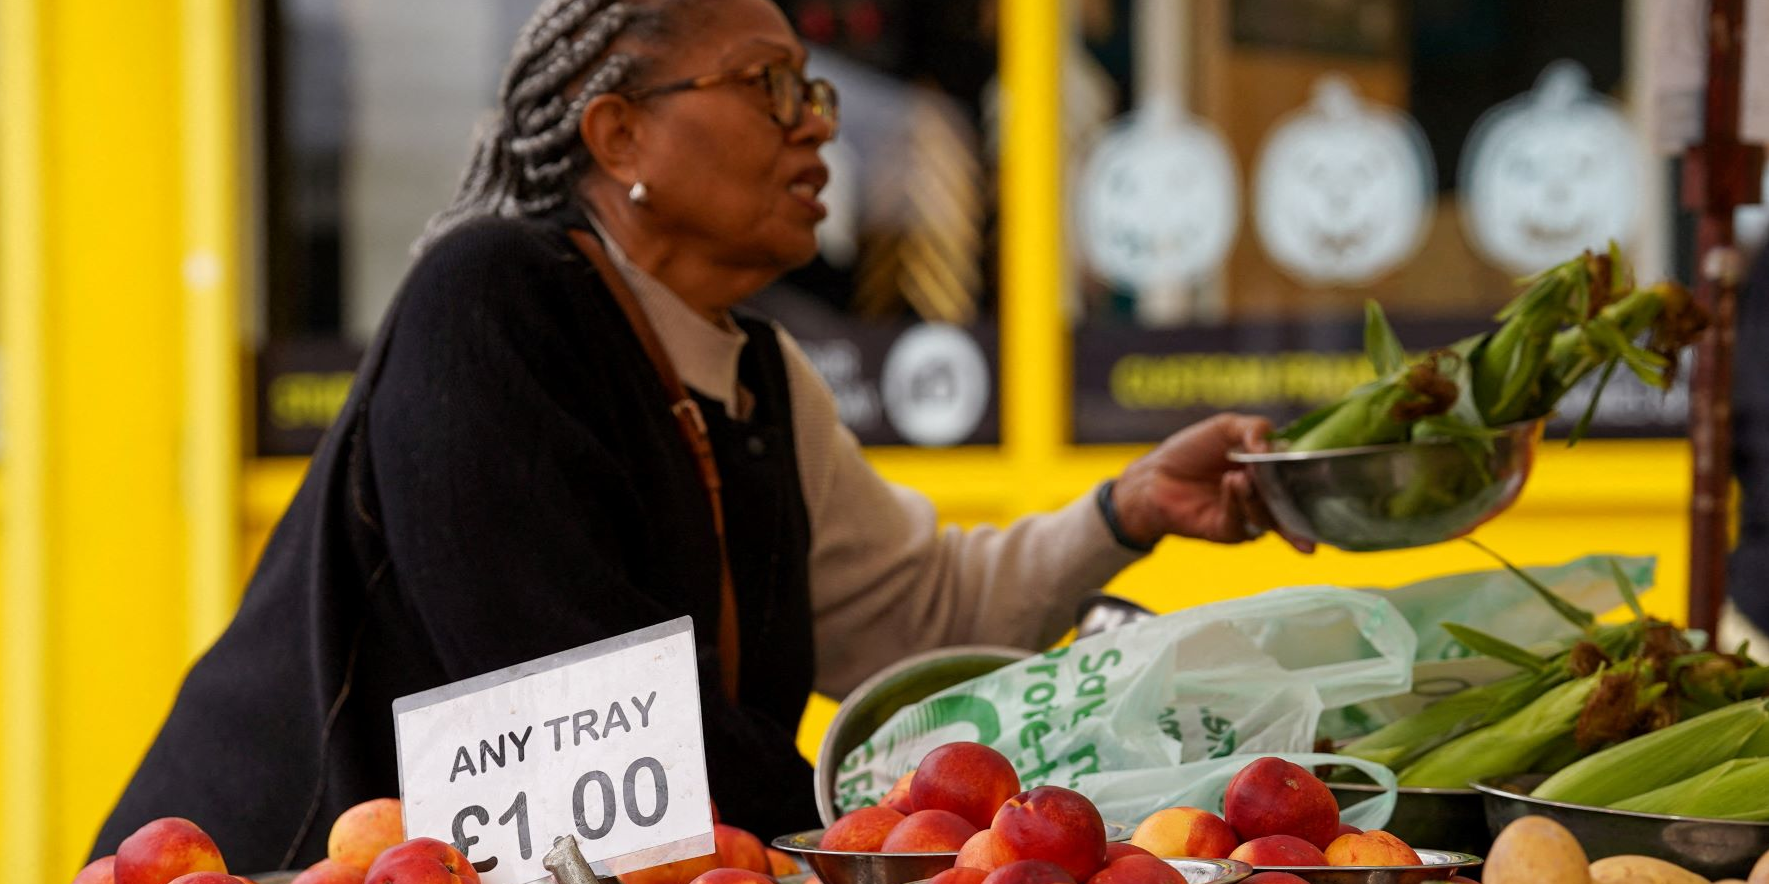 Royaume-Uni : avec le Brexit, les prix alimentaires ont bondi de 6% en deux ans, selon une étude